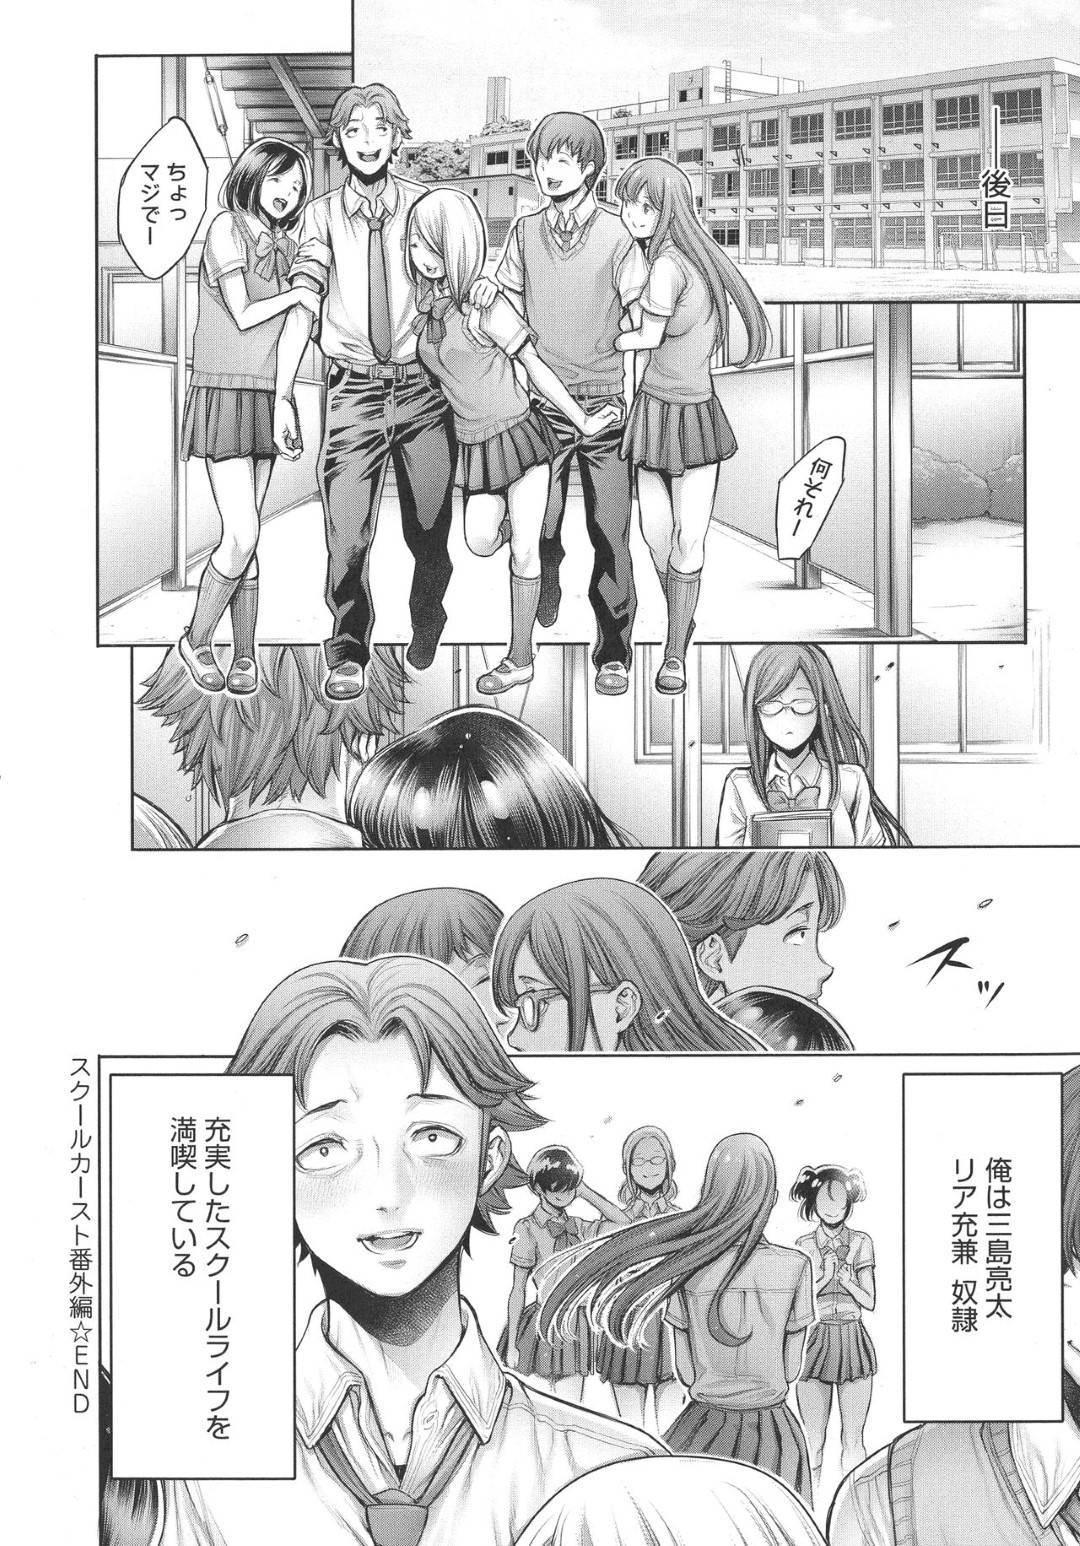 【エロ漫画】三島は漫研に奴隷として身体をおもちゃにされ女子達に好き勝手に弄られる【おかゆさん】